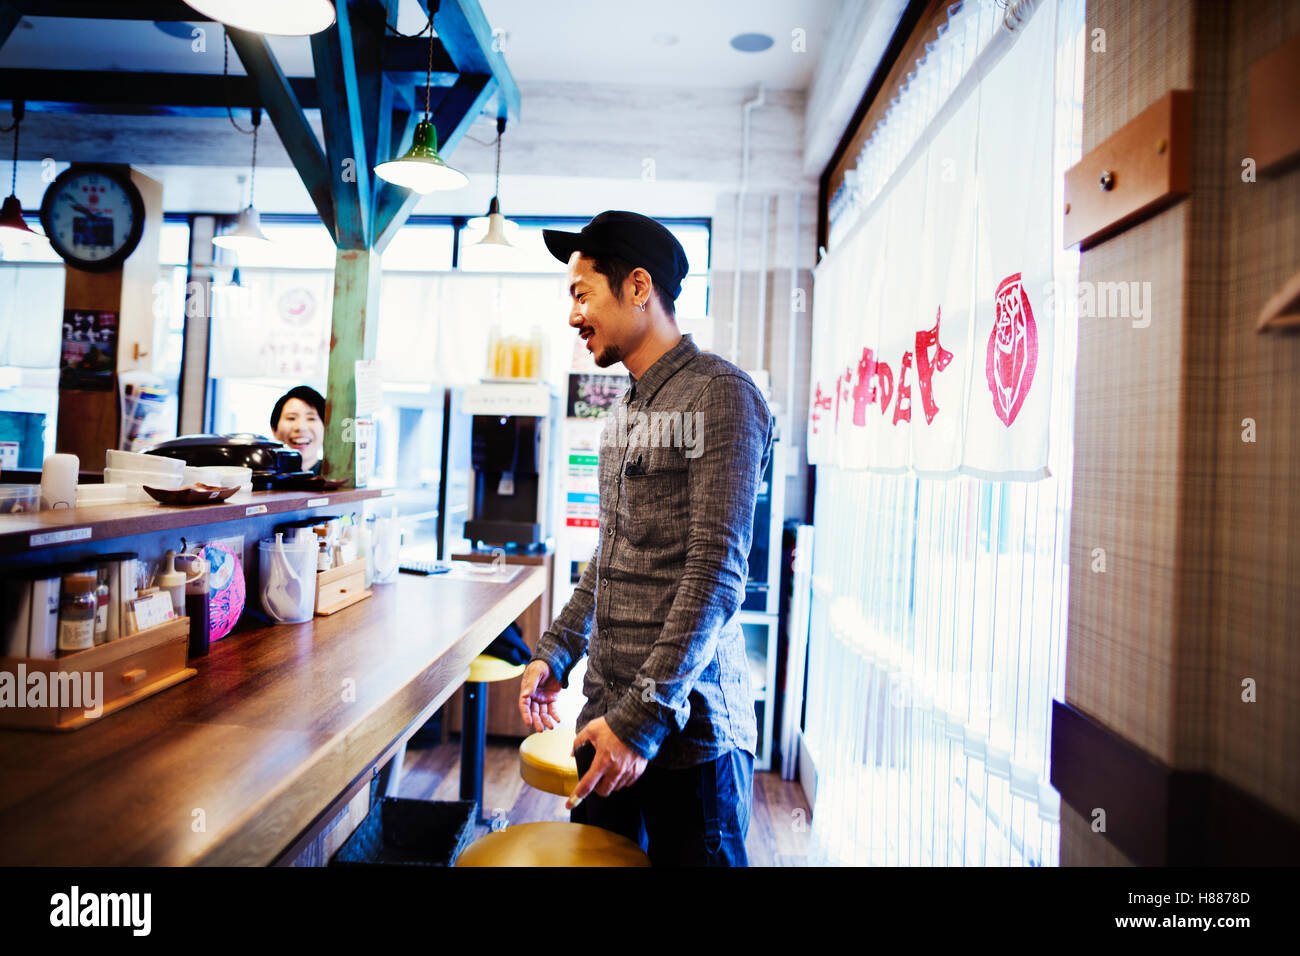 Un ramen noodle bar in una città. Il cliente in piedi al contatore ordinare del cibo. Foto Stock